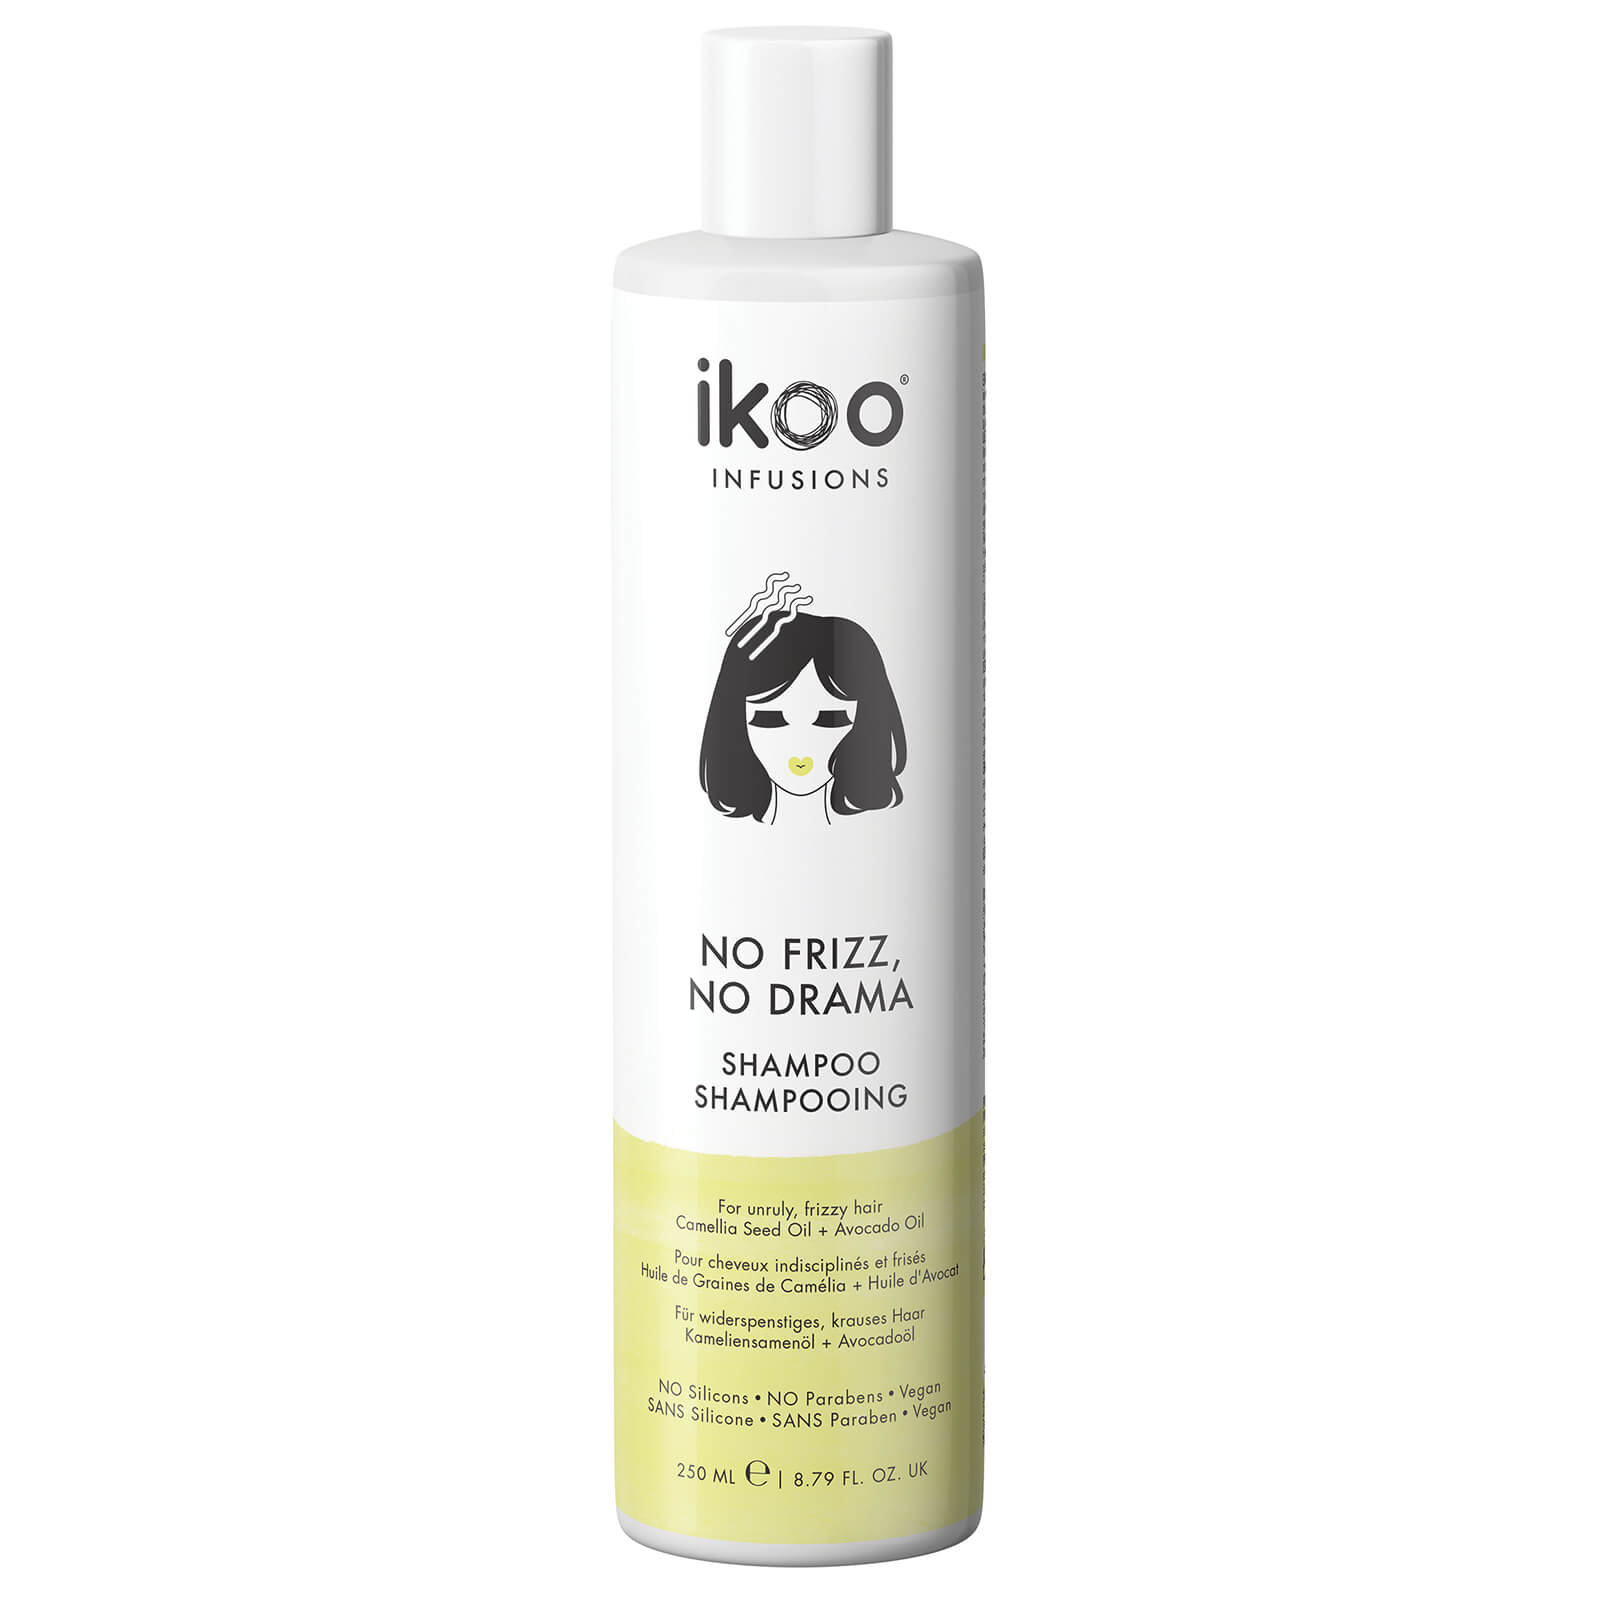 ikoo Shampoo - No Frizz, No Drama 250ml